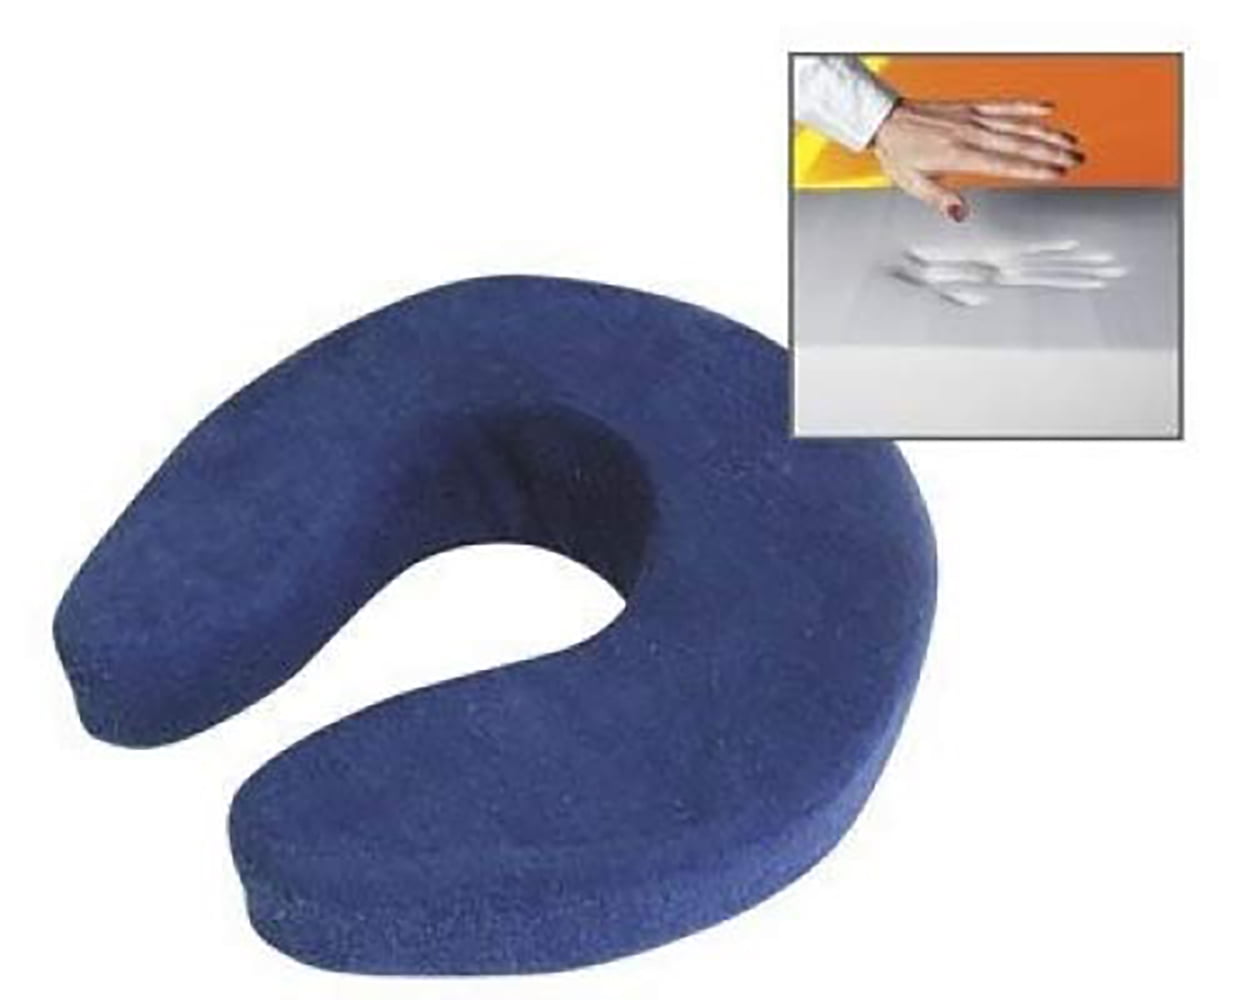 horseshoe shaped neck pillow